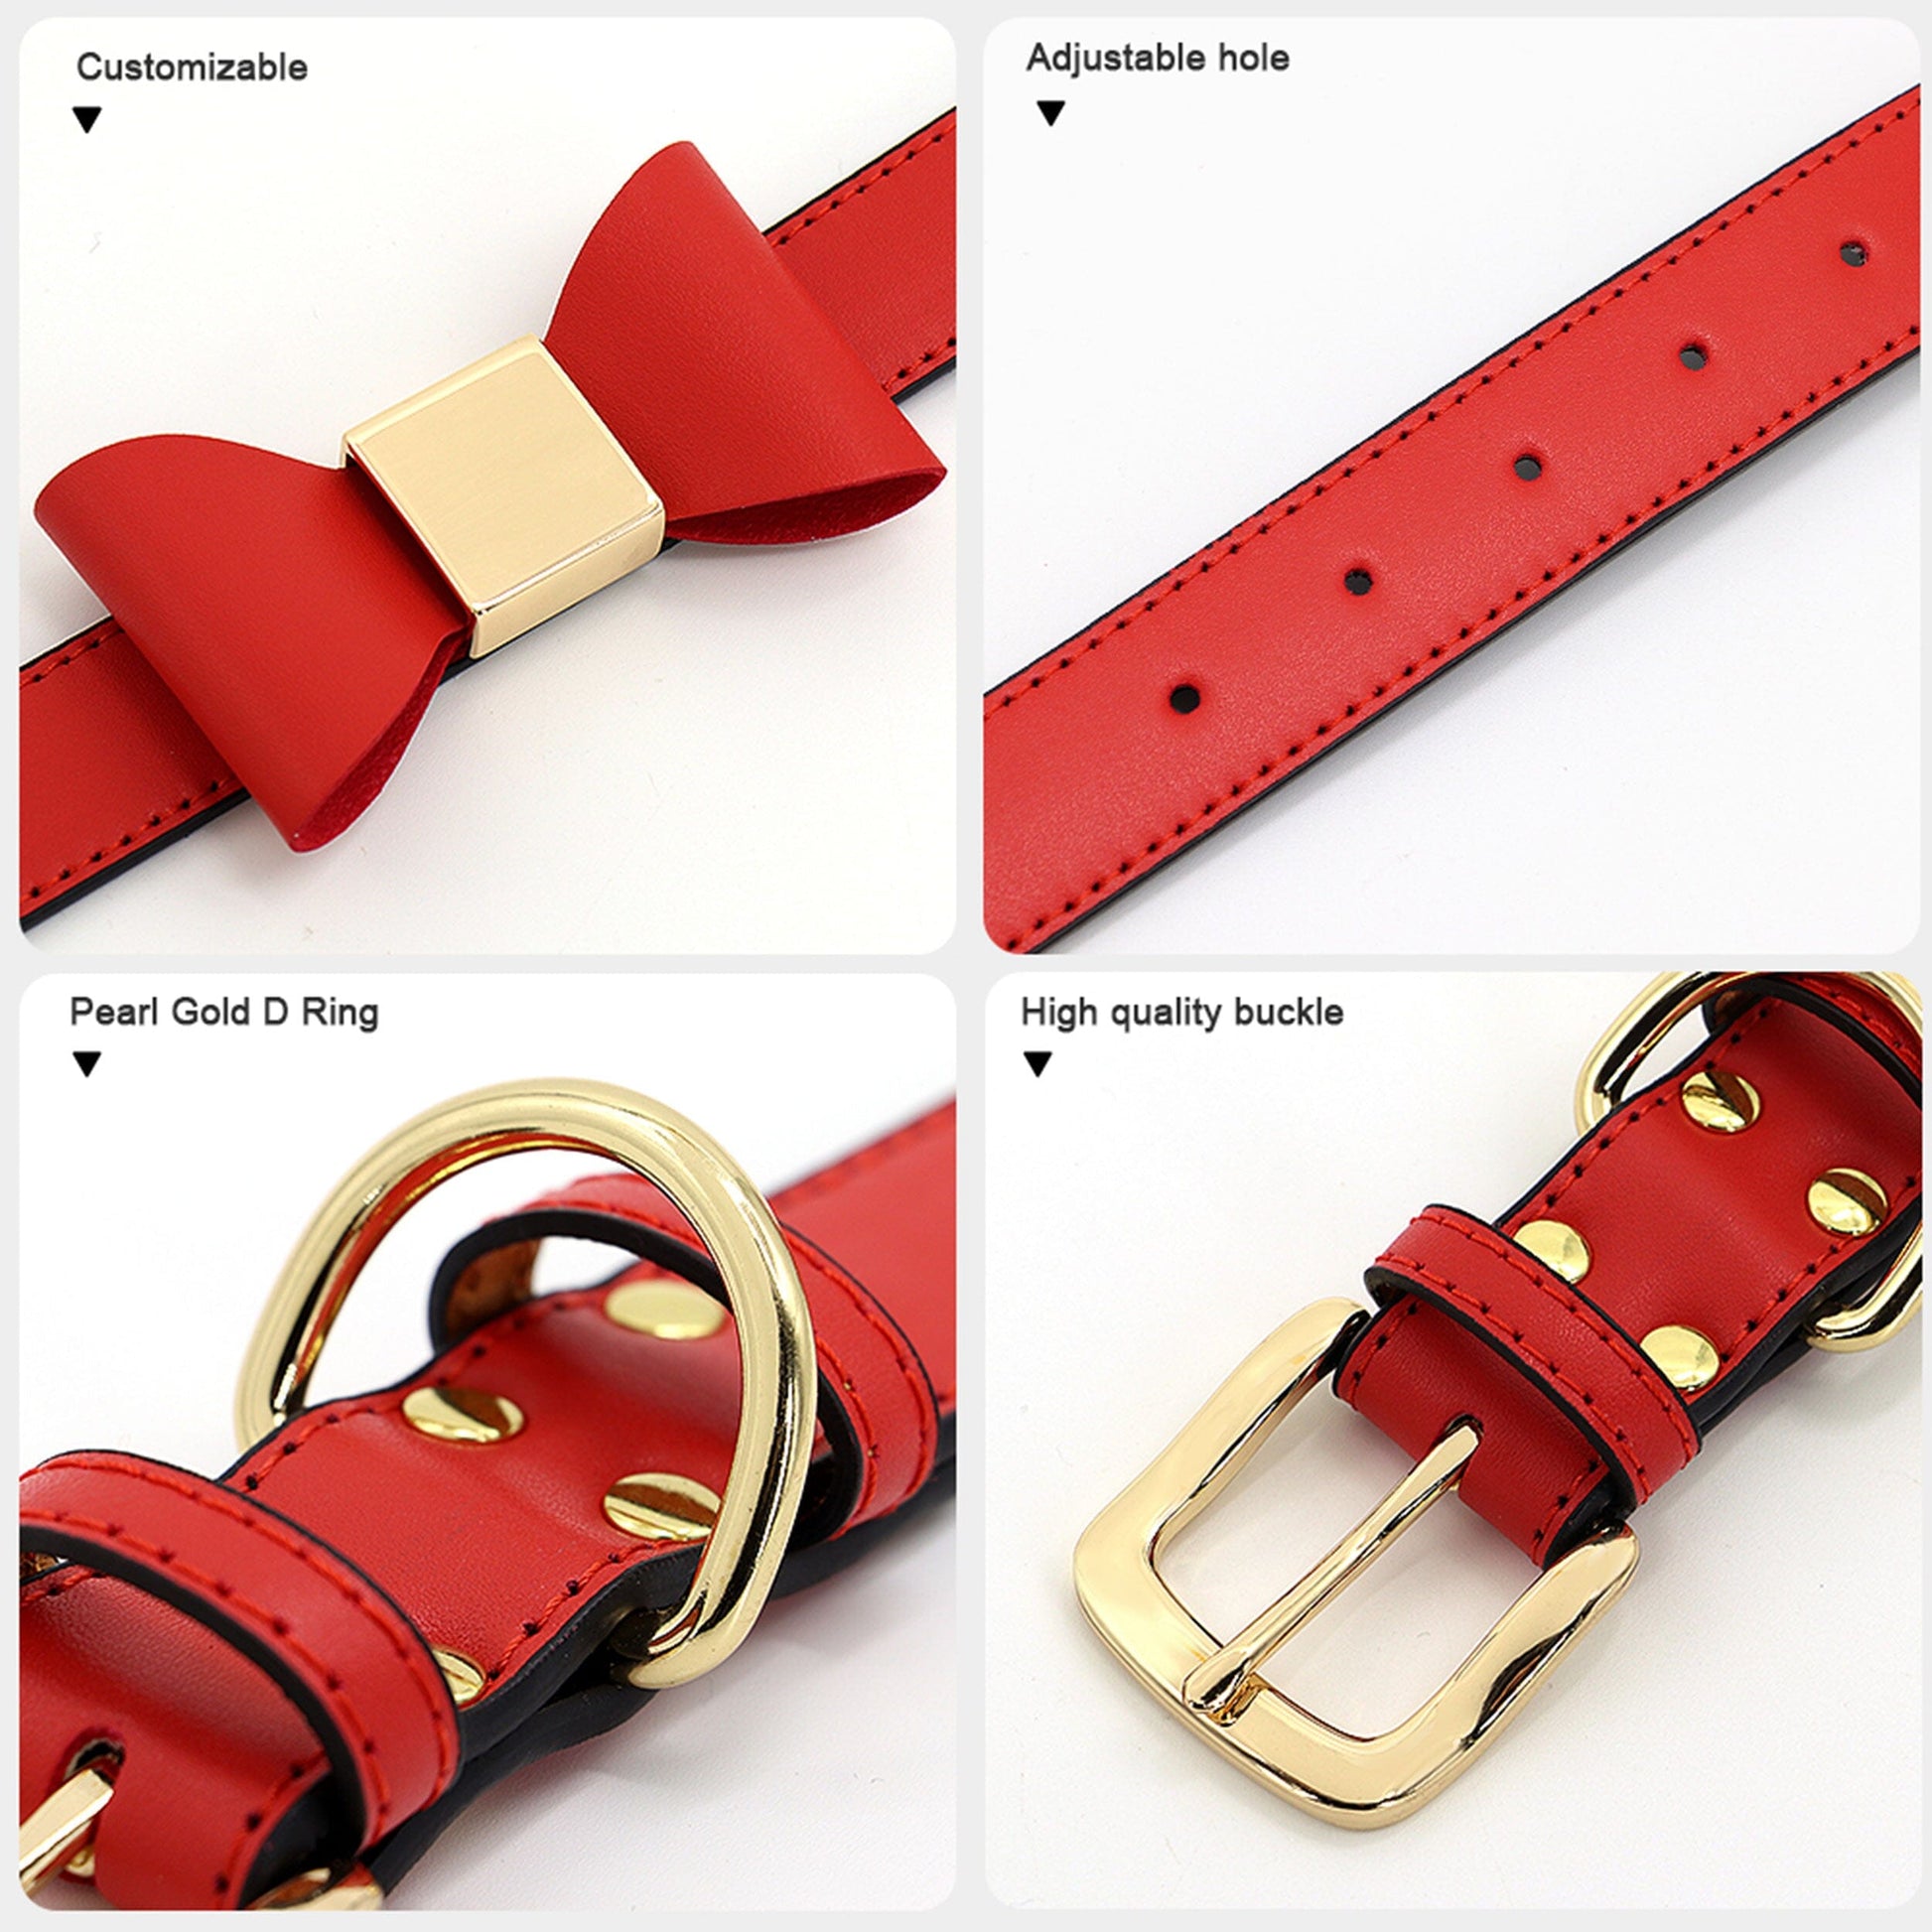 Premium Echtleder Hundehalsband mit Personalisierung | Bowknot Halsband Mein Shop 